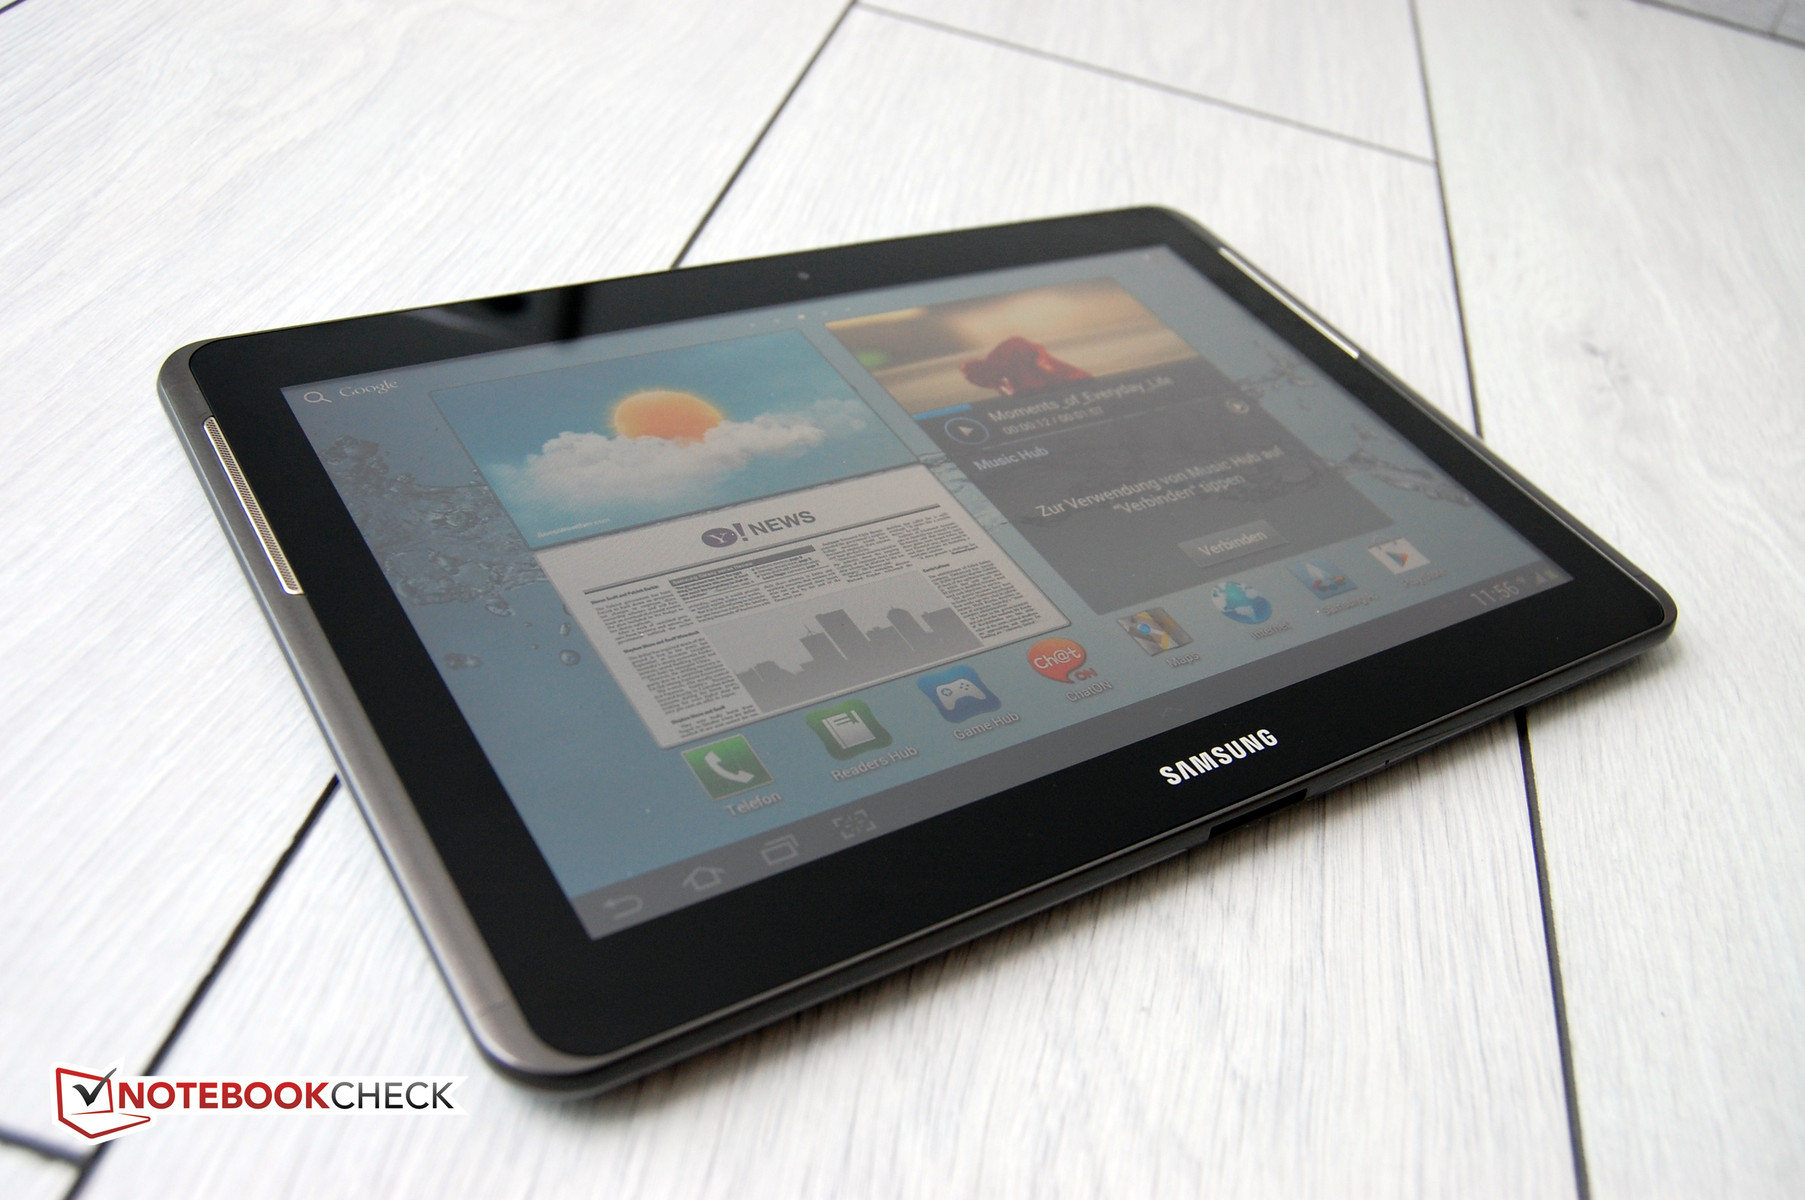 Samsung GalaxyTab 10.1 review: Samsung Galaxy Tab 10.1 (3G, 16GB) - CNET